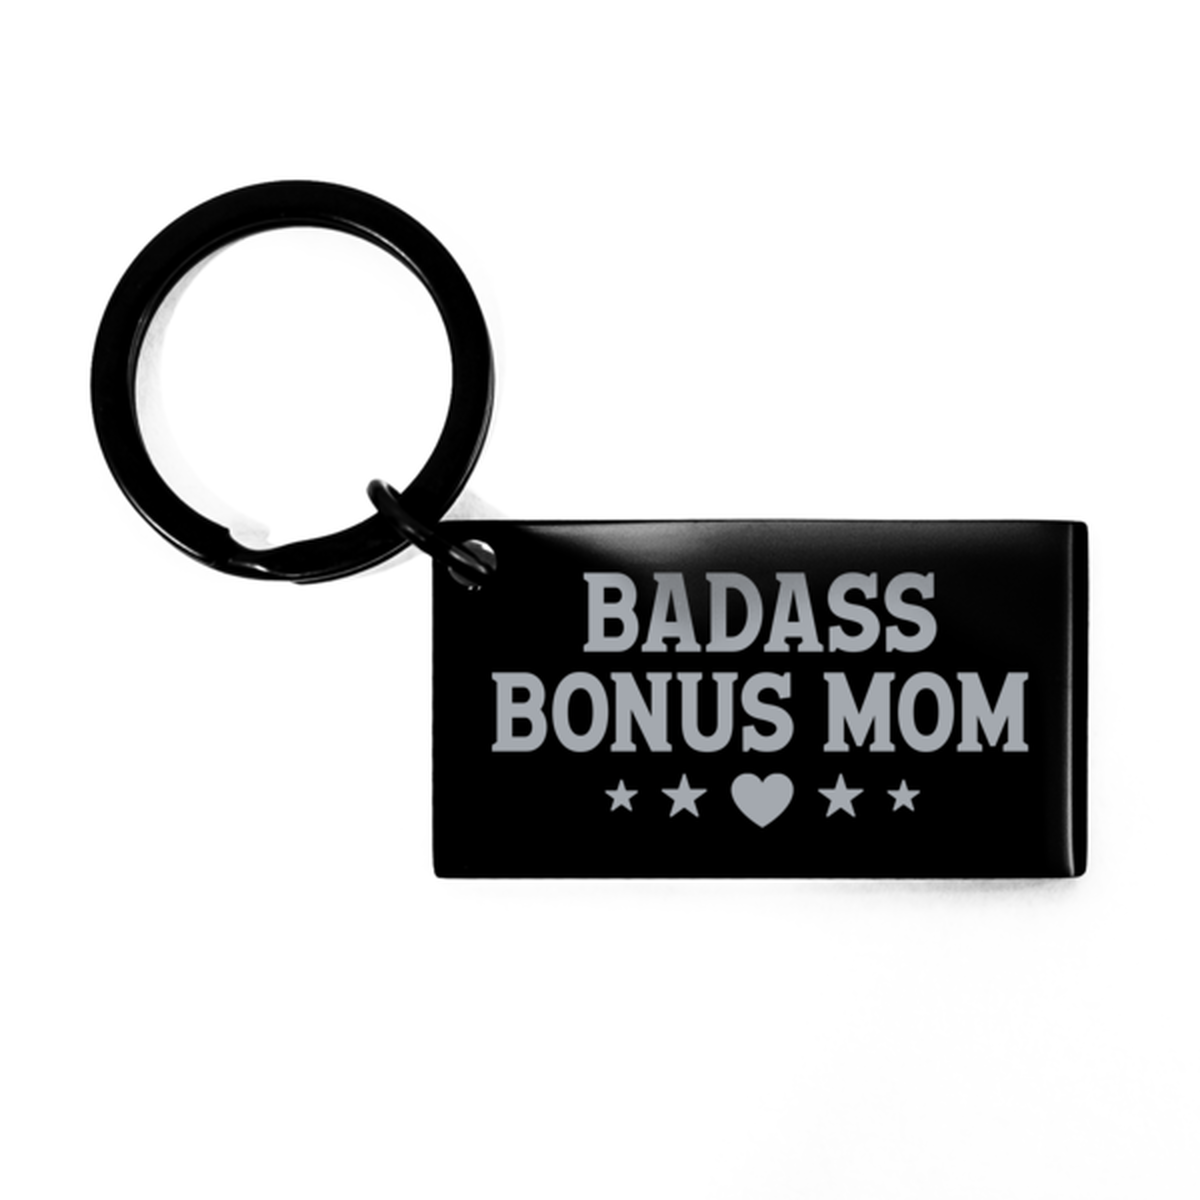 Bonus Mom Black Keychain, Badass Bonus Mom, Funny Family Gifts  Keyring For Bonus Mom From Son Daughter